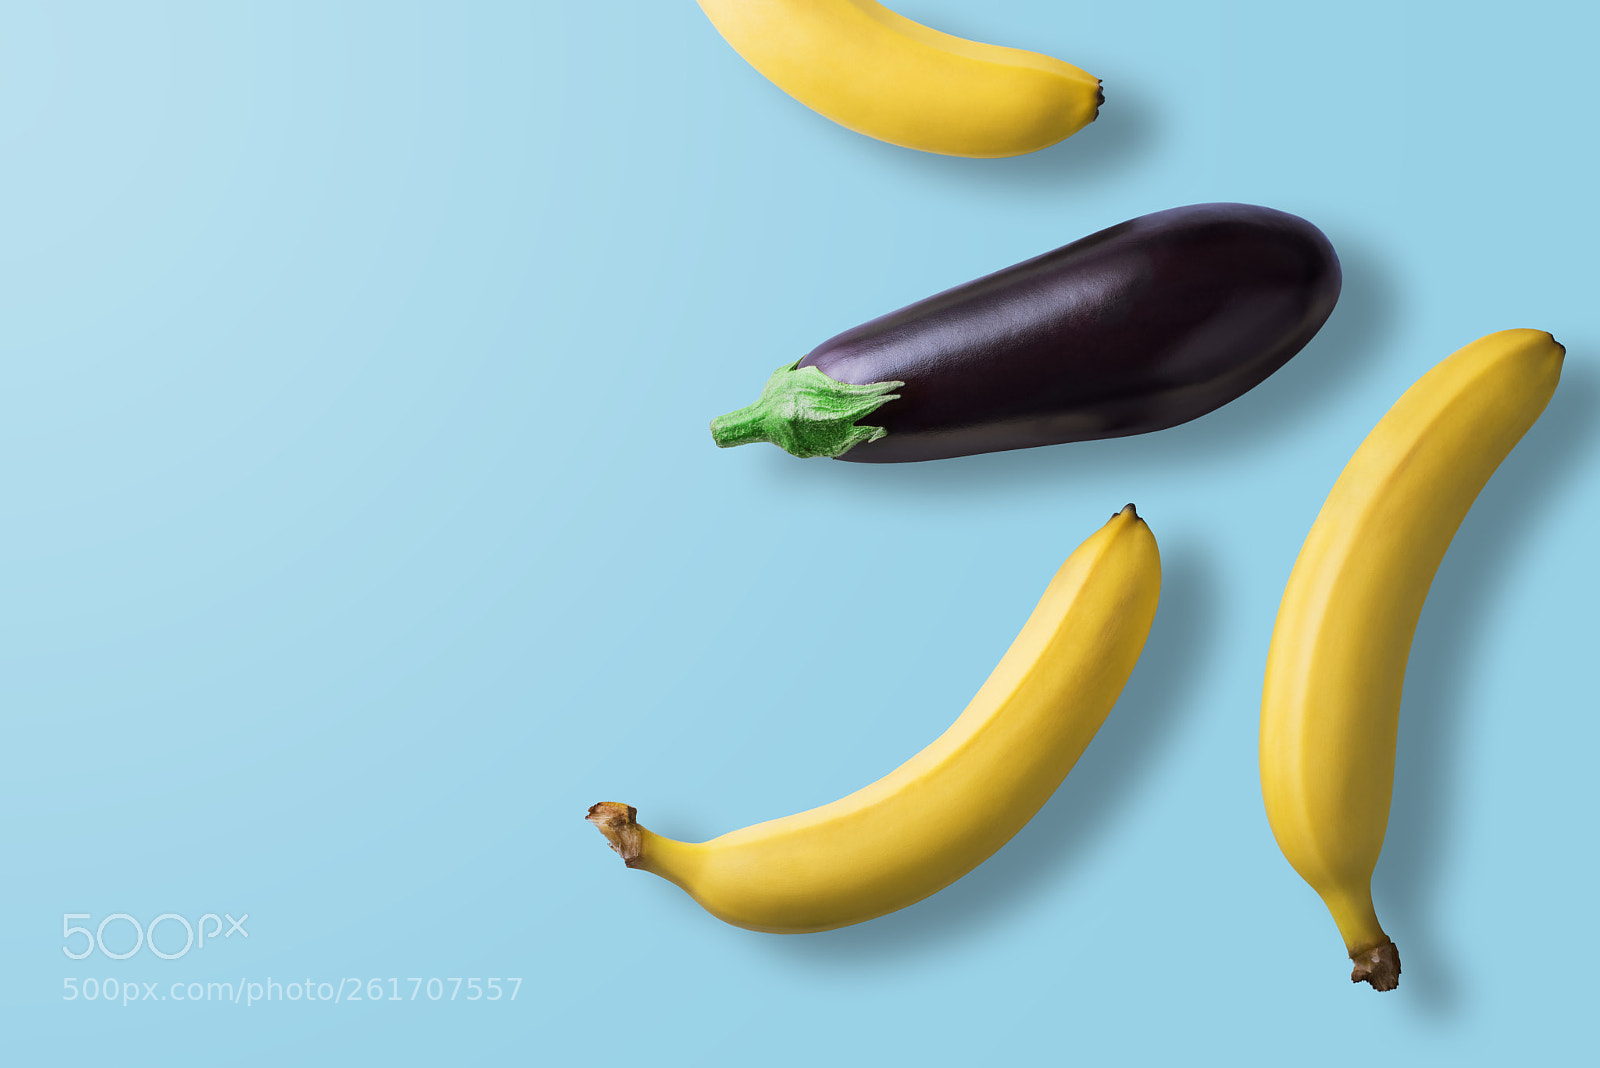 Nikon D810 sample photo. Bananas and eggplant on photography